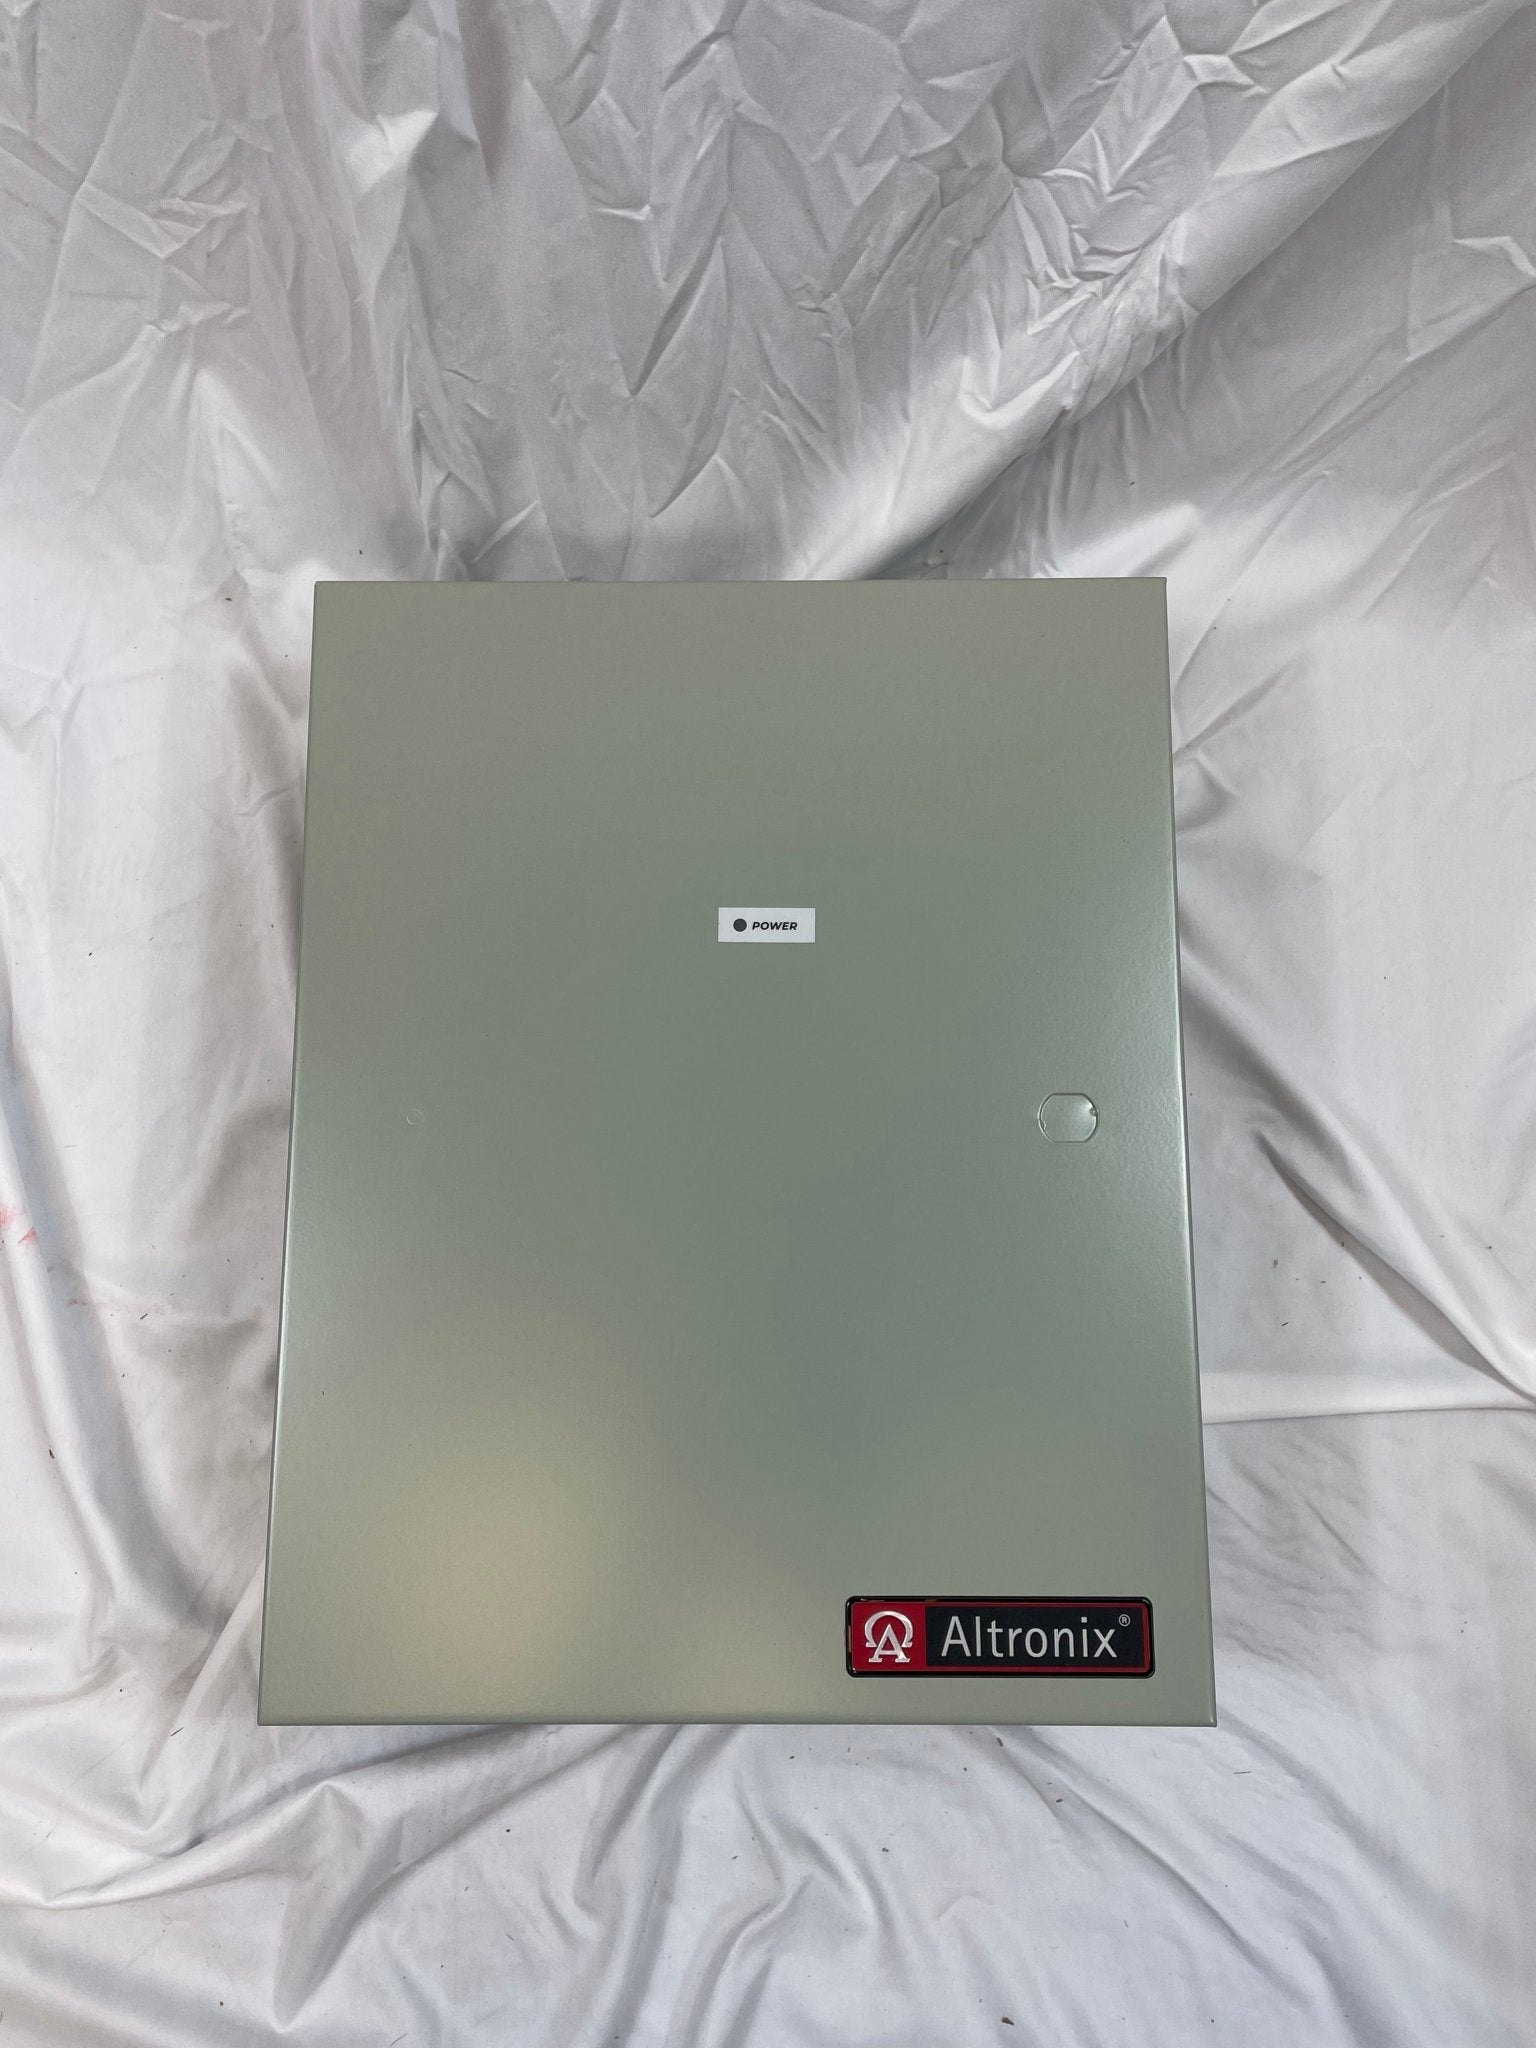 Altronix AL600ULACM - The Fire Alarm Supplier